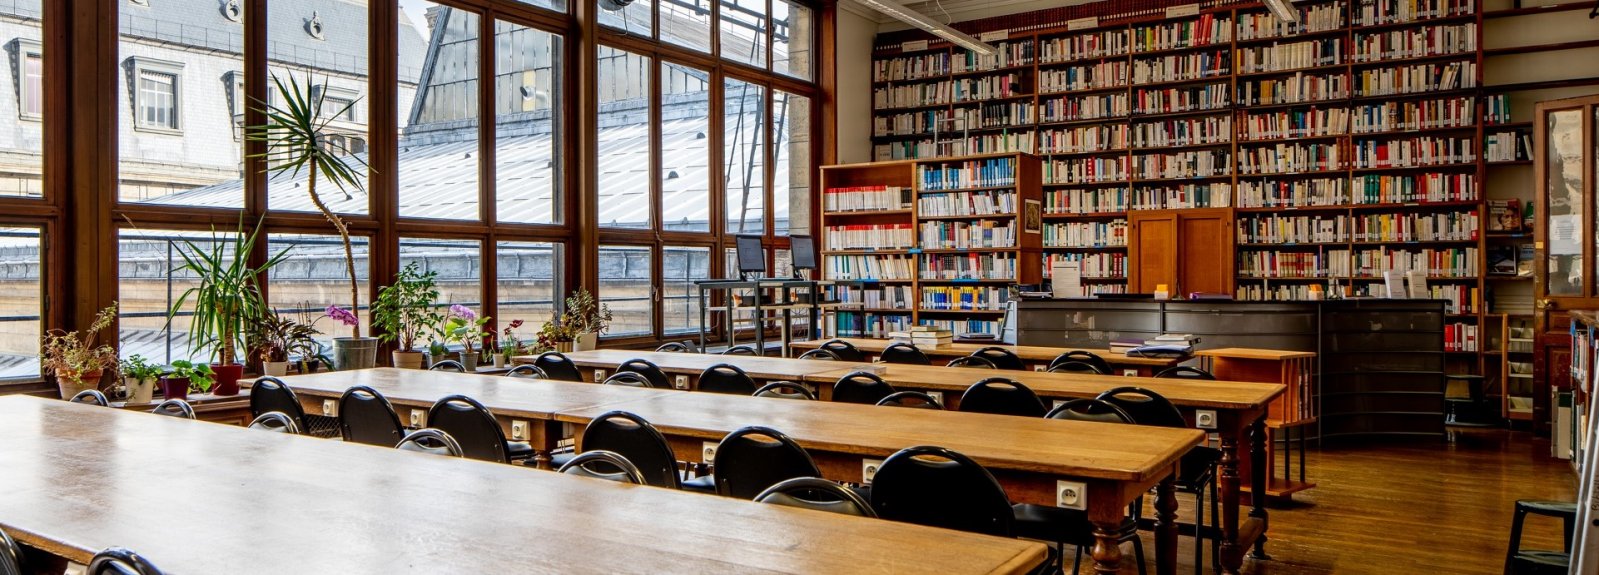 Photographie de la salle de lecture de la bibliothèque Lavisse